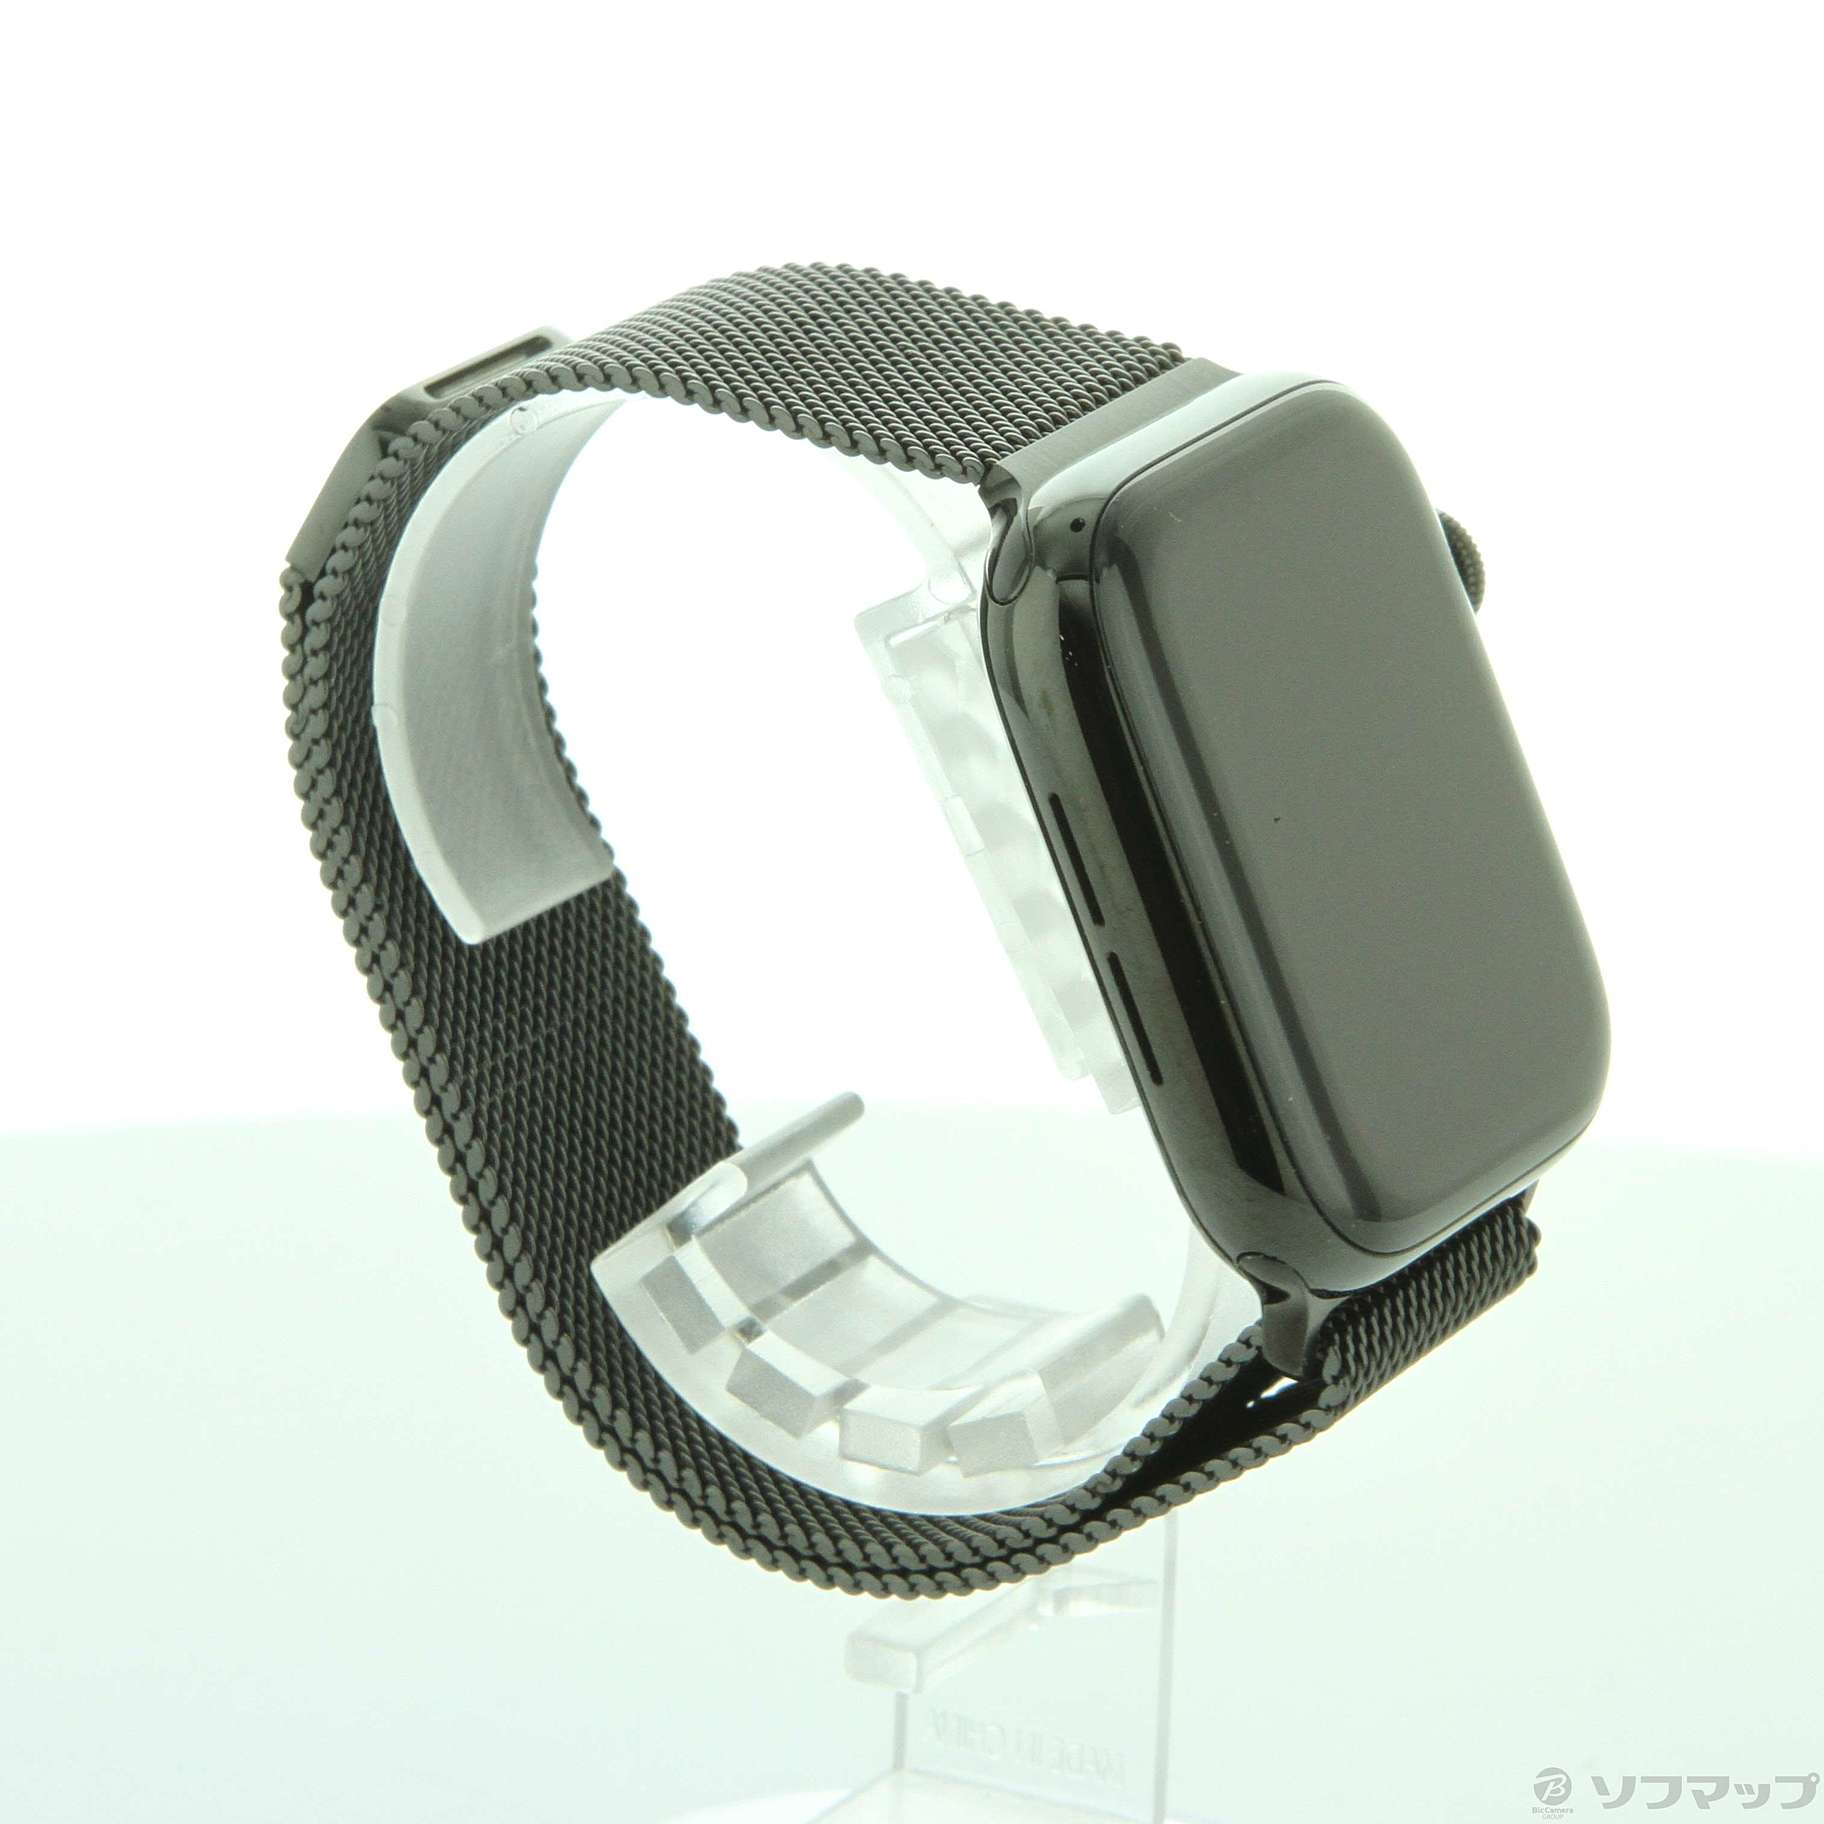 〔中古品〕 Apple Watch Series 5 GPS + Cellular 44mm スペースブラックステンレススチールケース  スペースブラックミラネーゼループ